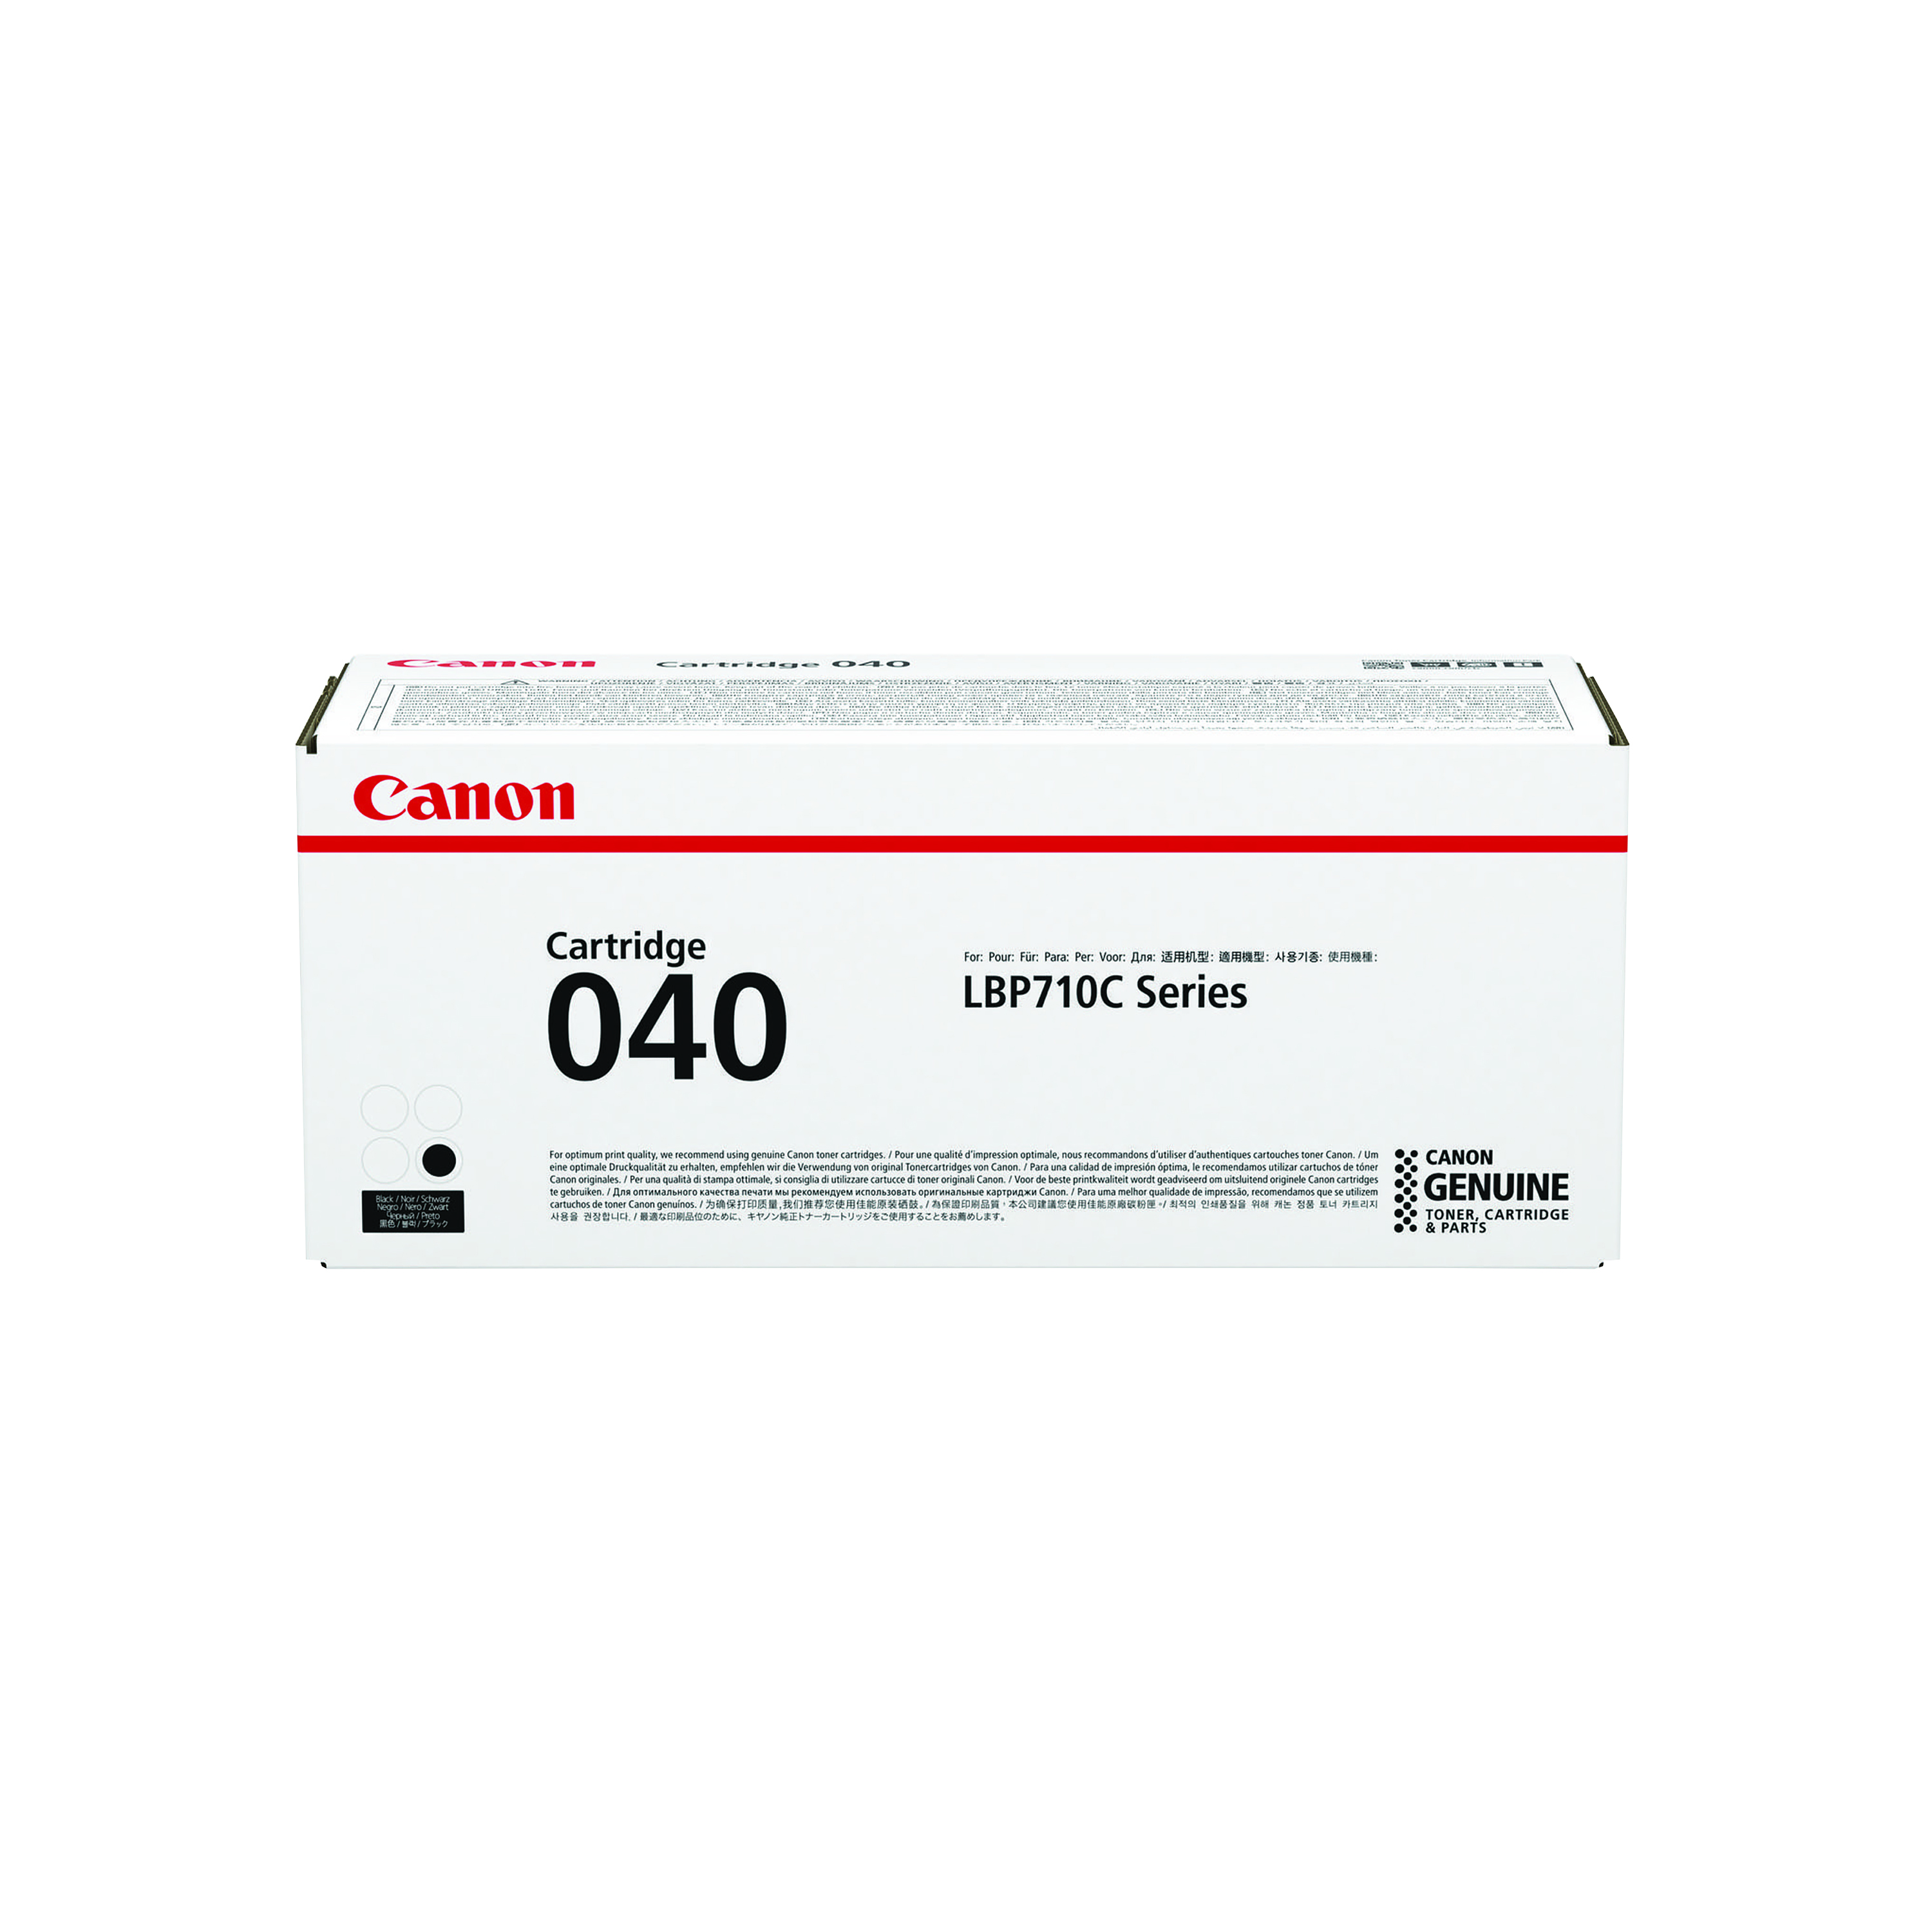 Canon 040 Black Toner Cartridge 0460C001